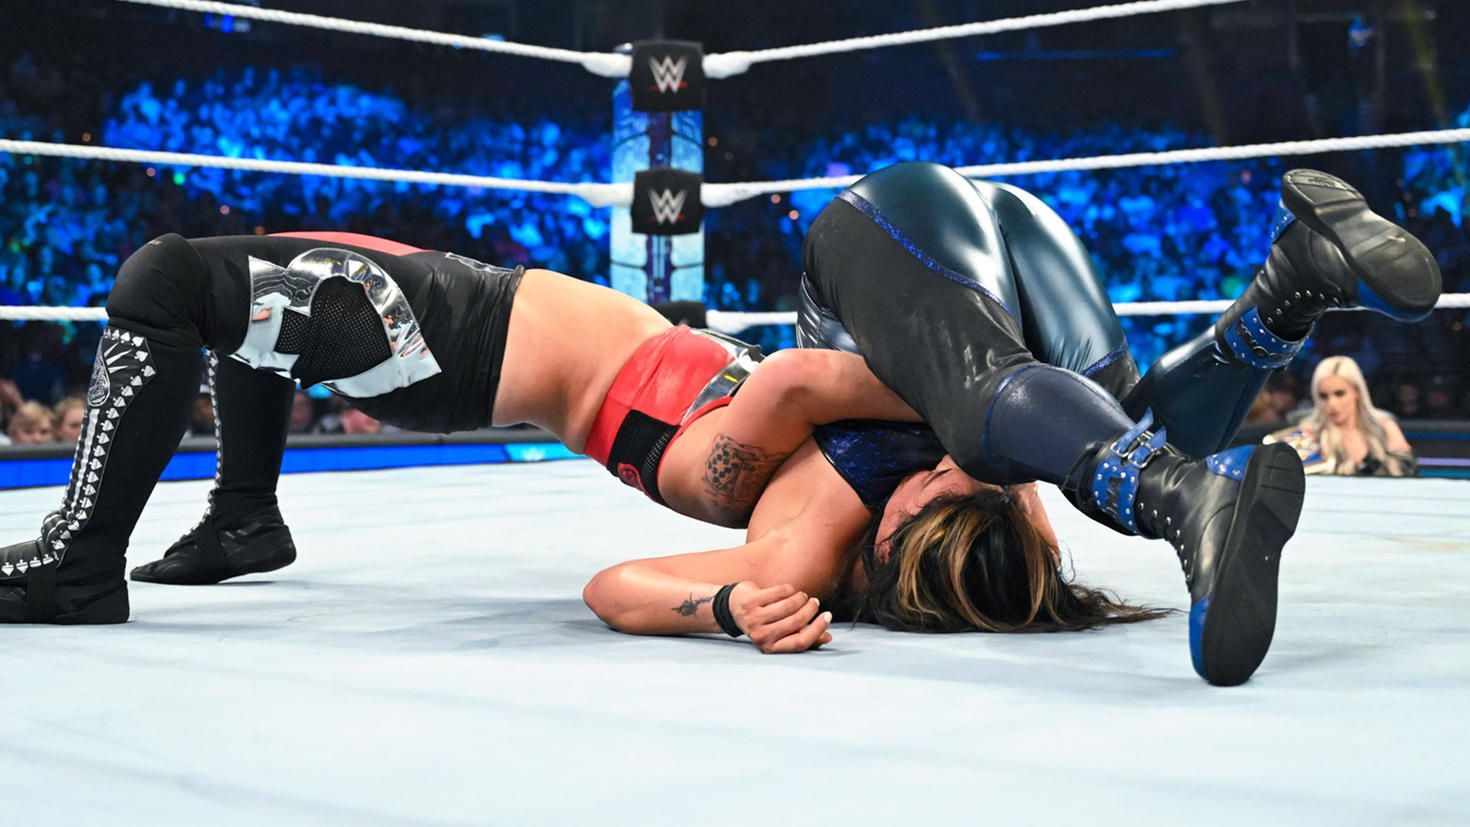 Shayna Baszler earned a WWE SmackDown Women's title match